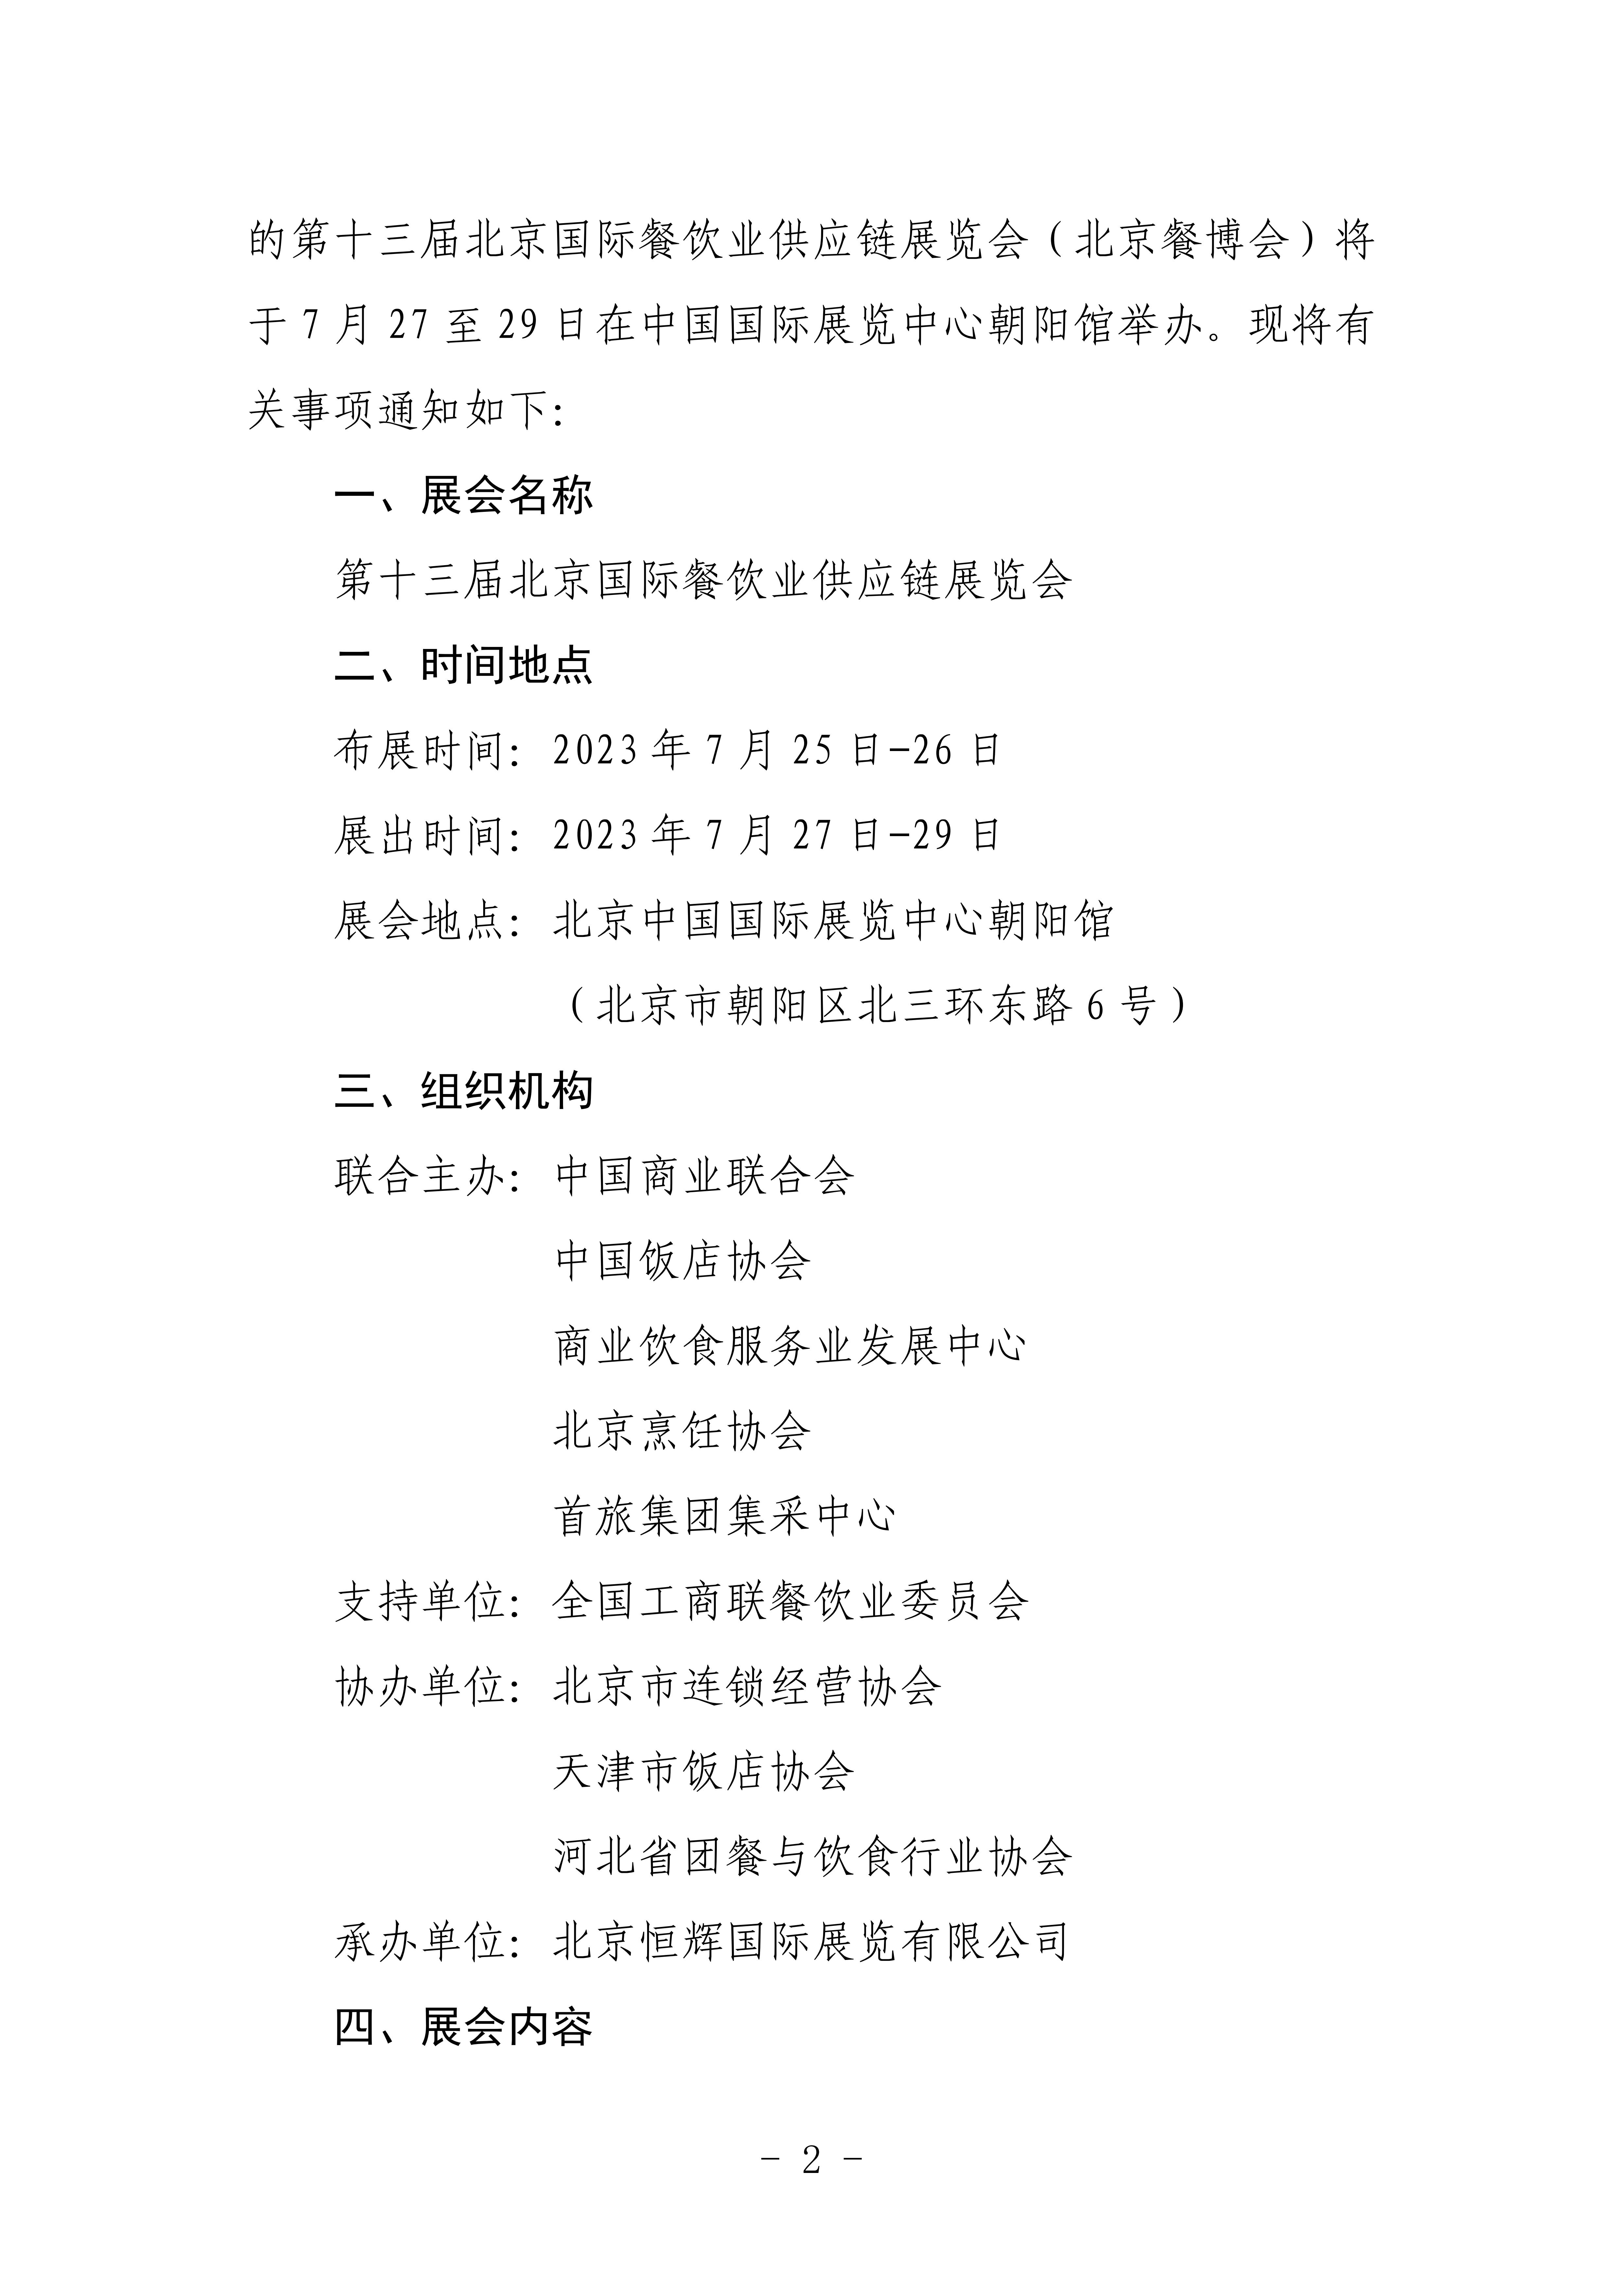 北京烹饪协会关于邀请参加第十二届北京国际餐饮业供应链展览会的函(图2)